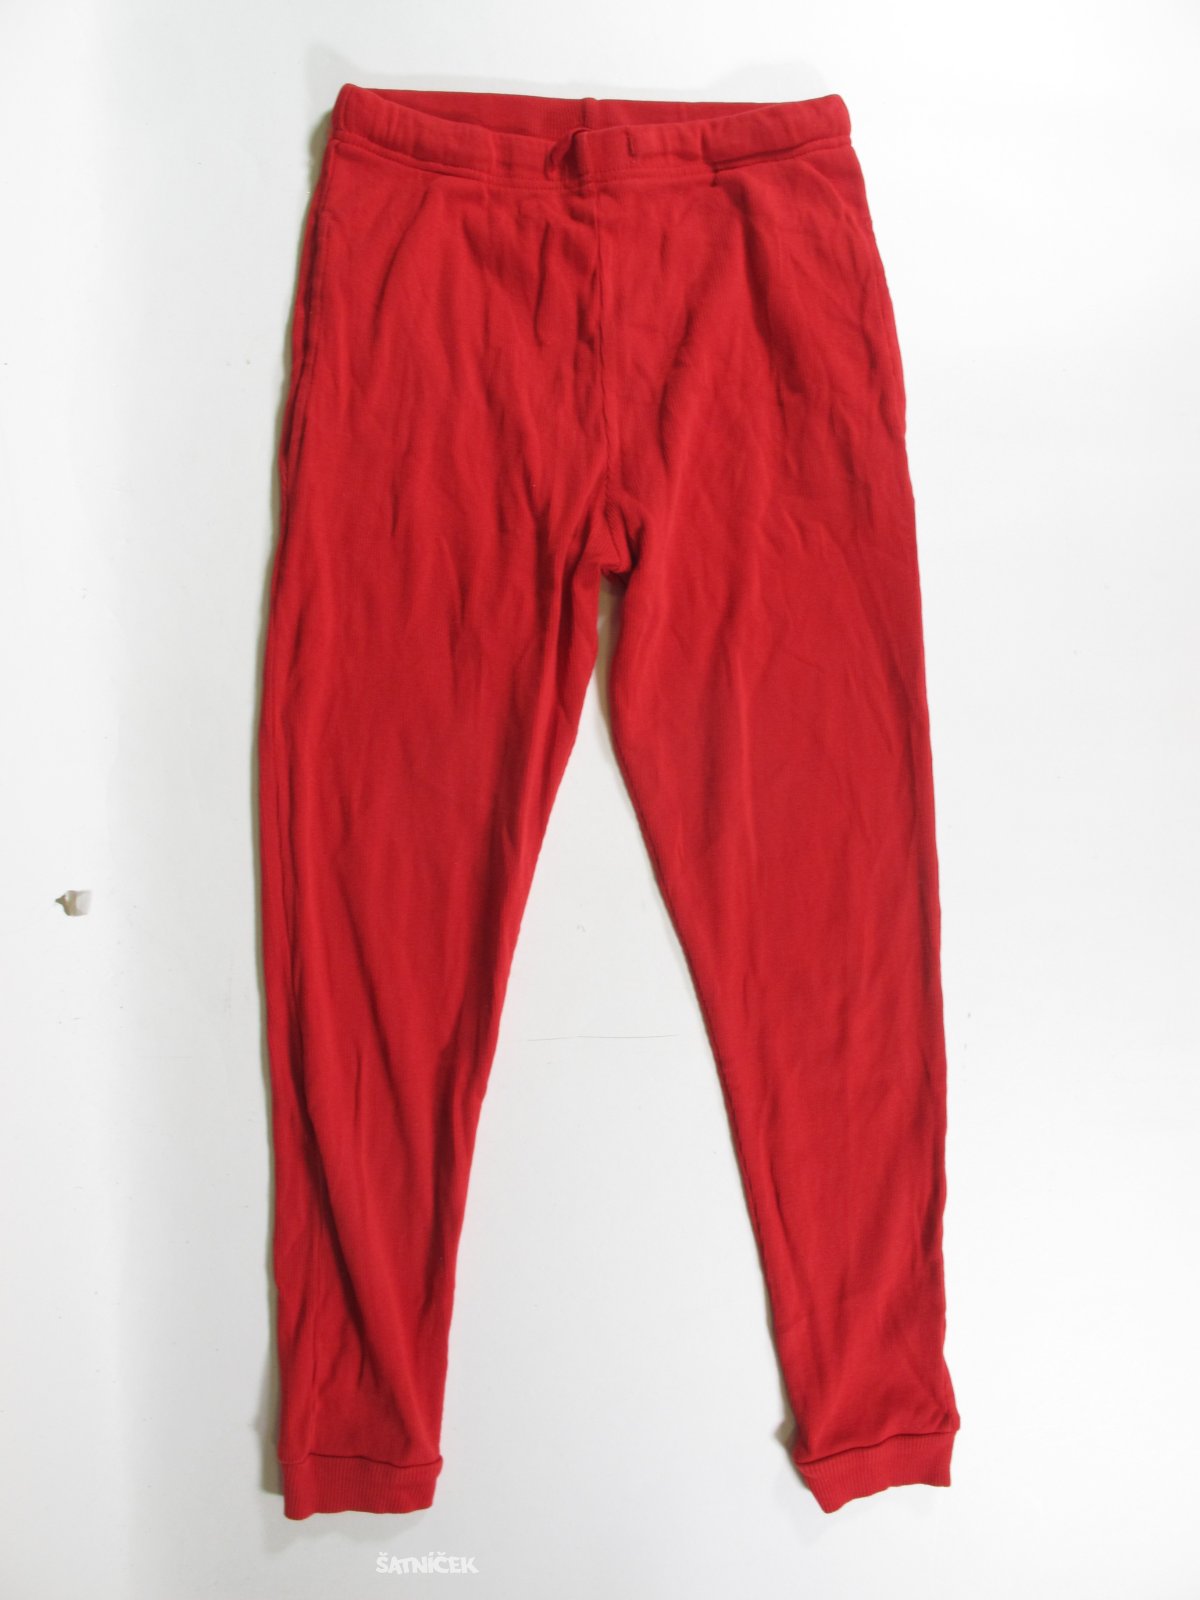 Kalhoty od pyžama červené pro děti secondhand